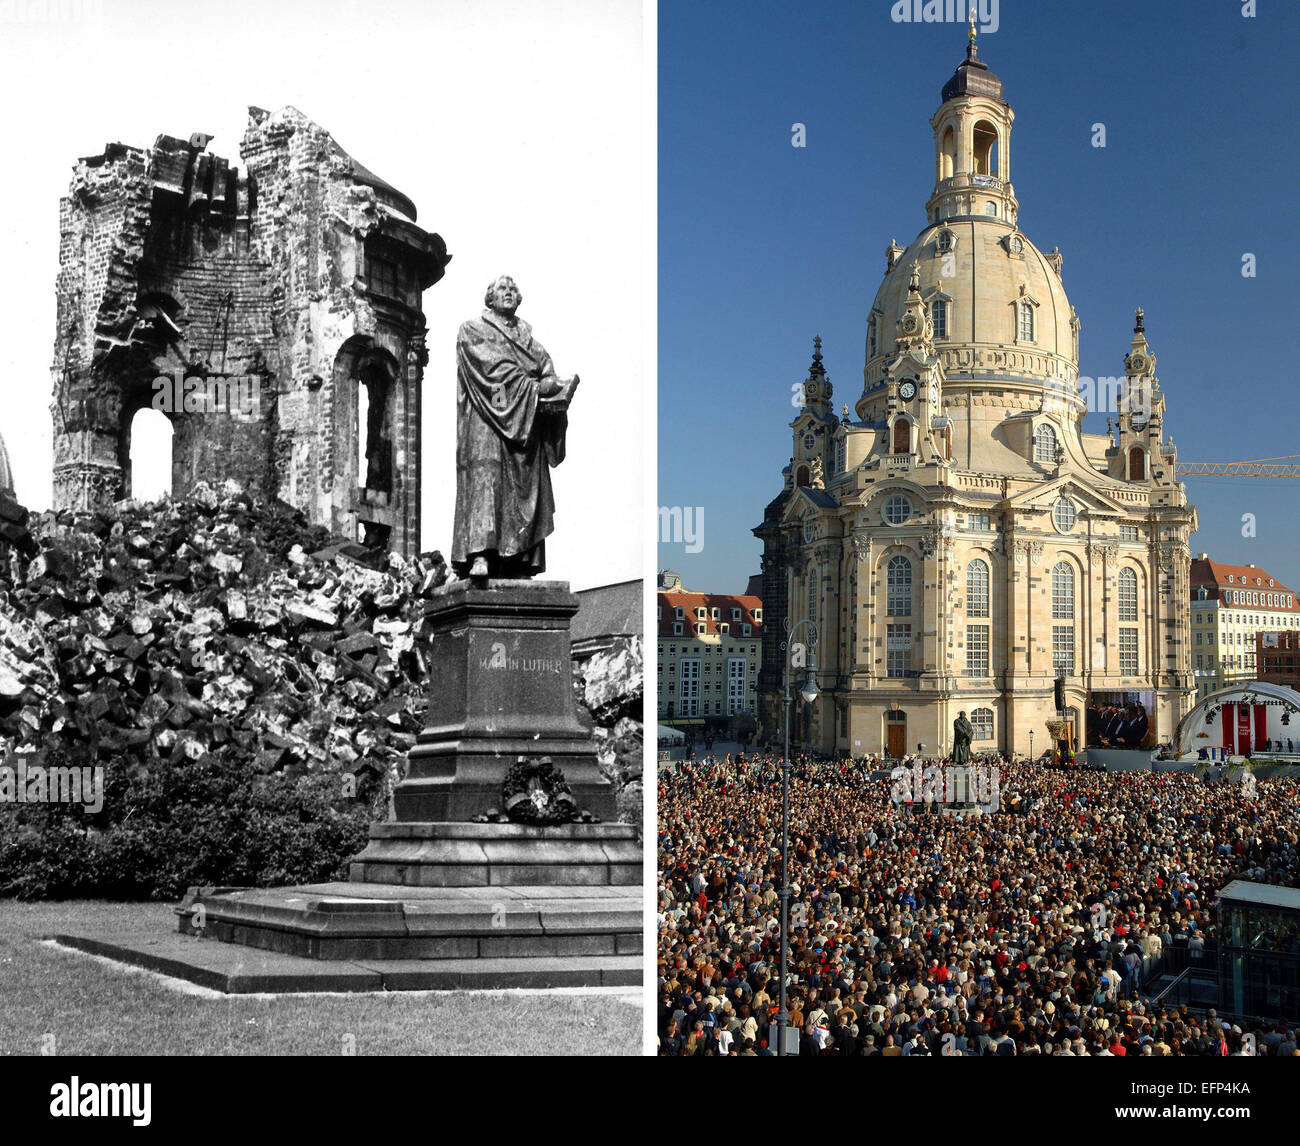 Разрушенные памятники культуры. Дрезден Фрауэнкирхе 1945. Дрезден Церковь Фрауэнкирхе руины. Фрауэнкирхе Дрезден после войны. Фрауэнкирхе Дрезден разрушенная.